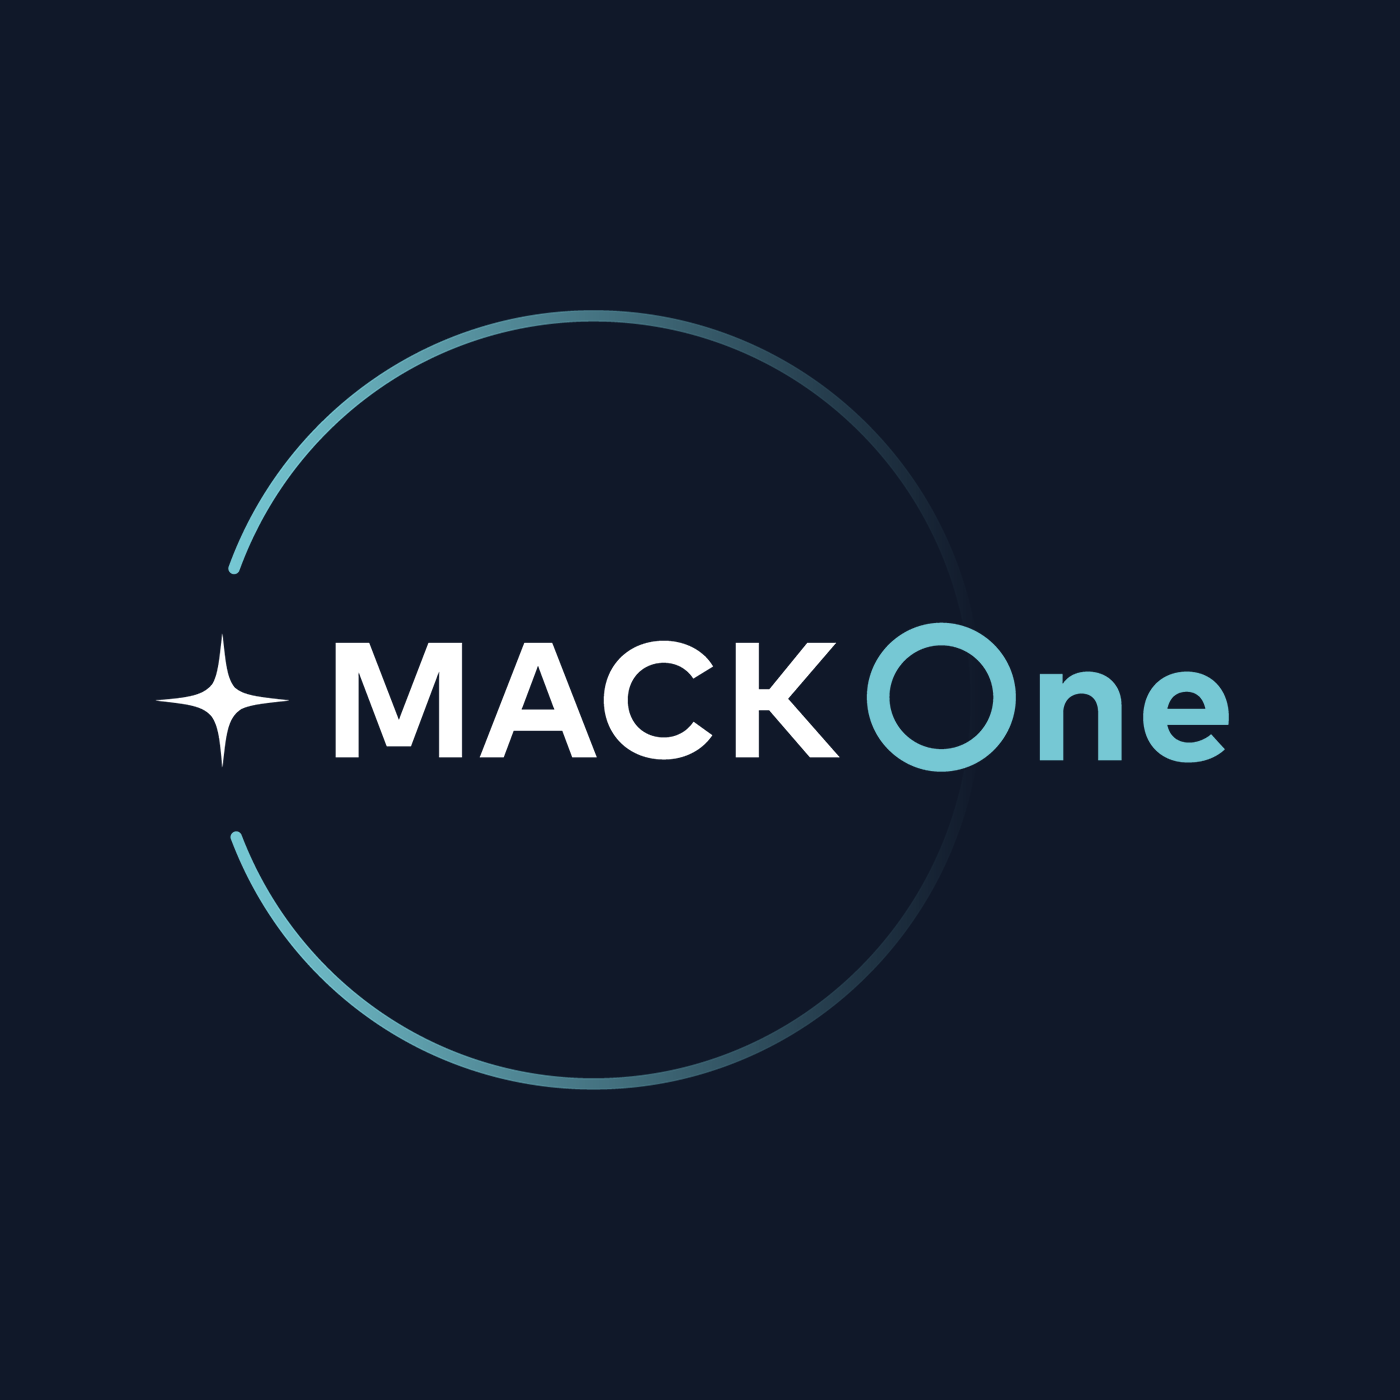 Mack One Deutschland GmbH & Co KG